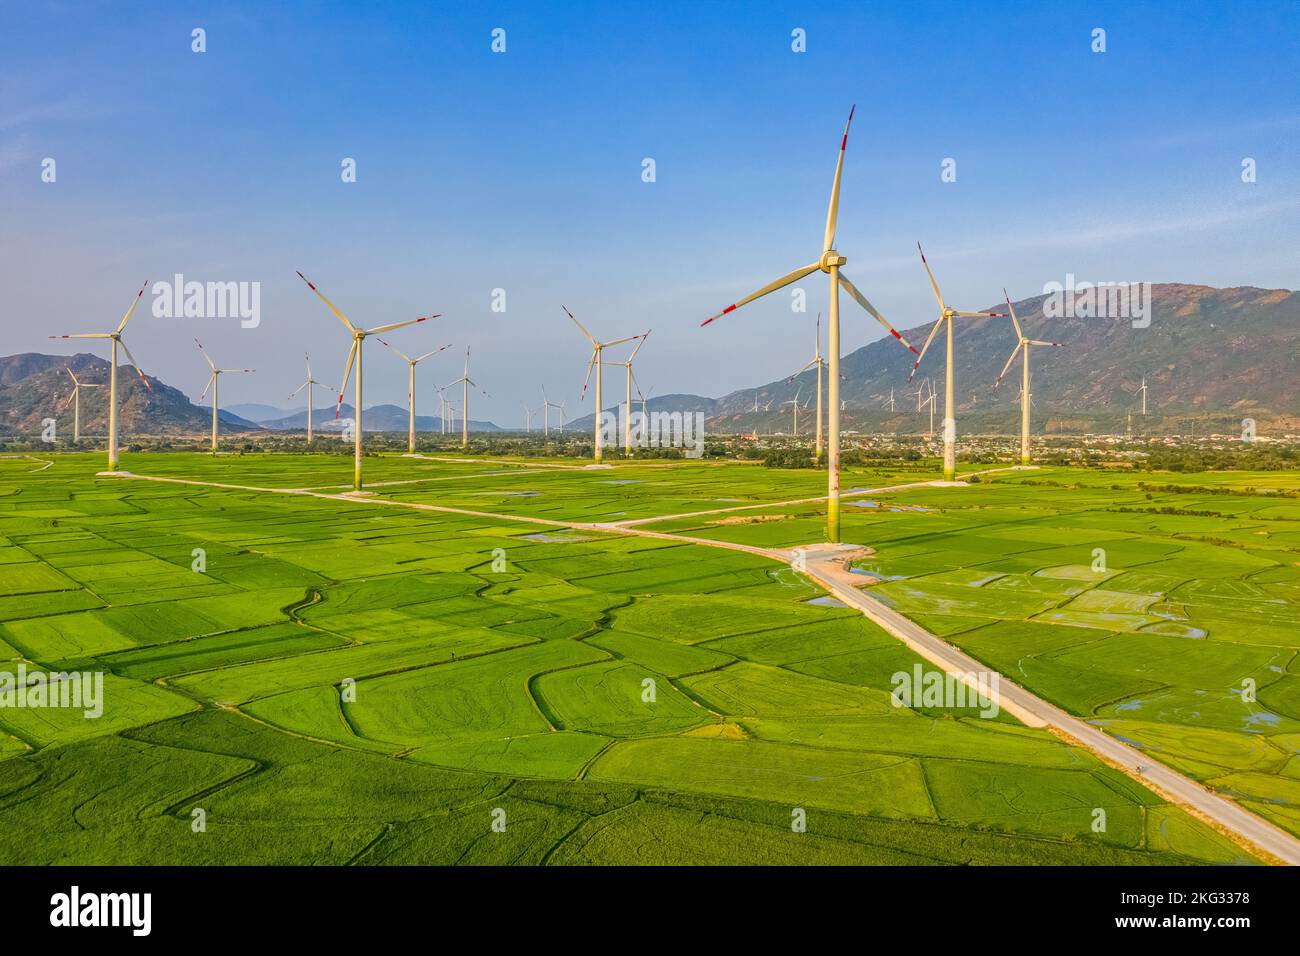 Paysage avec turbine énergie verte électricité, éolienne pour la production d'énergie électrique, éoliennes produisant de l'électricité sur le champ de riz à Phan Ra Banque D'Images